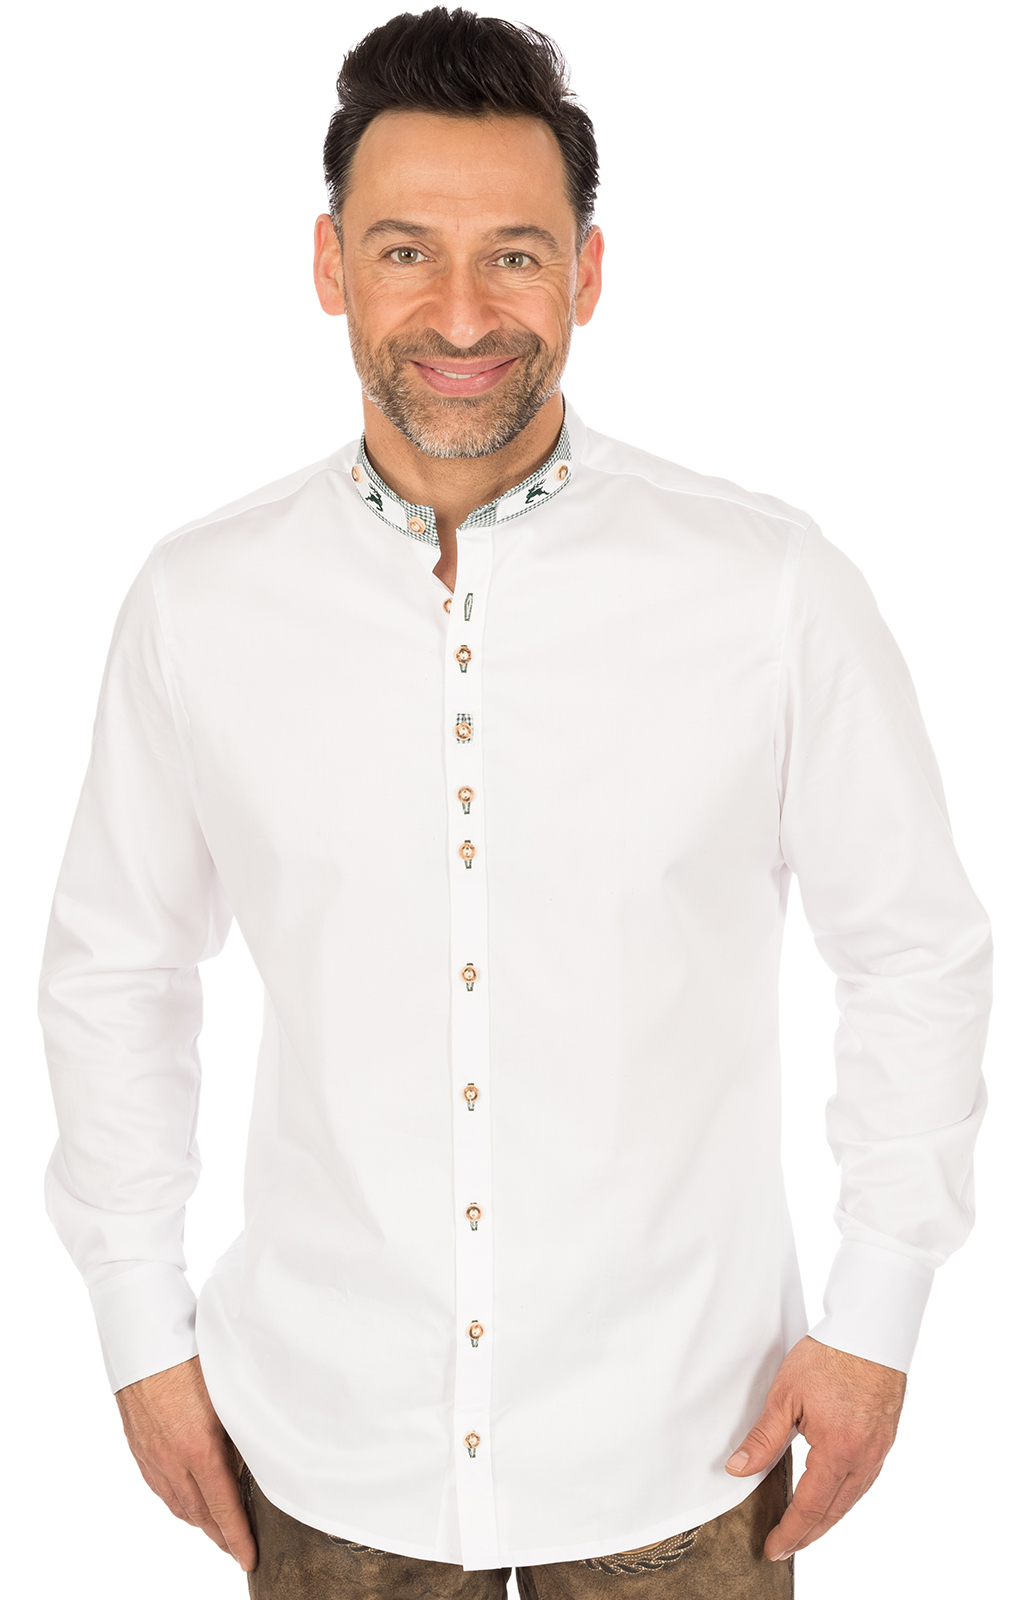 Klederdrachthemd Slim Fit PERINO wit von OS-Trachten